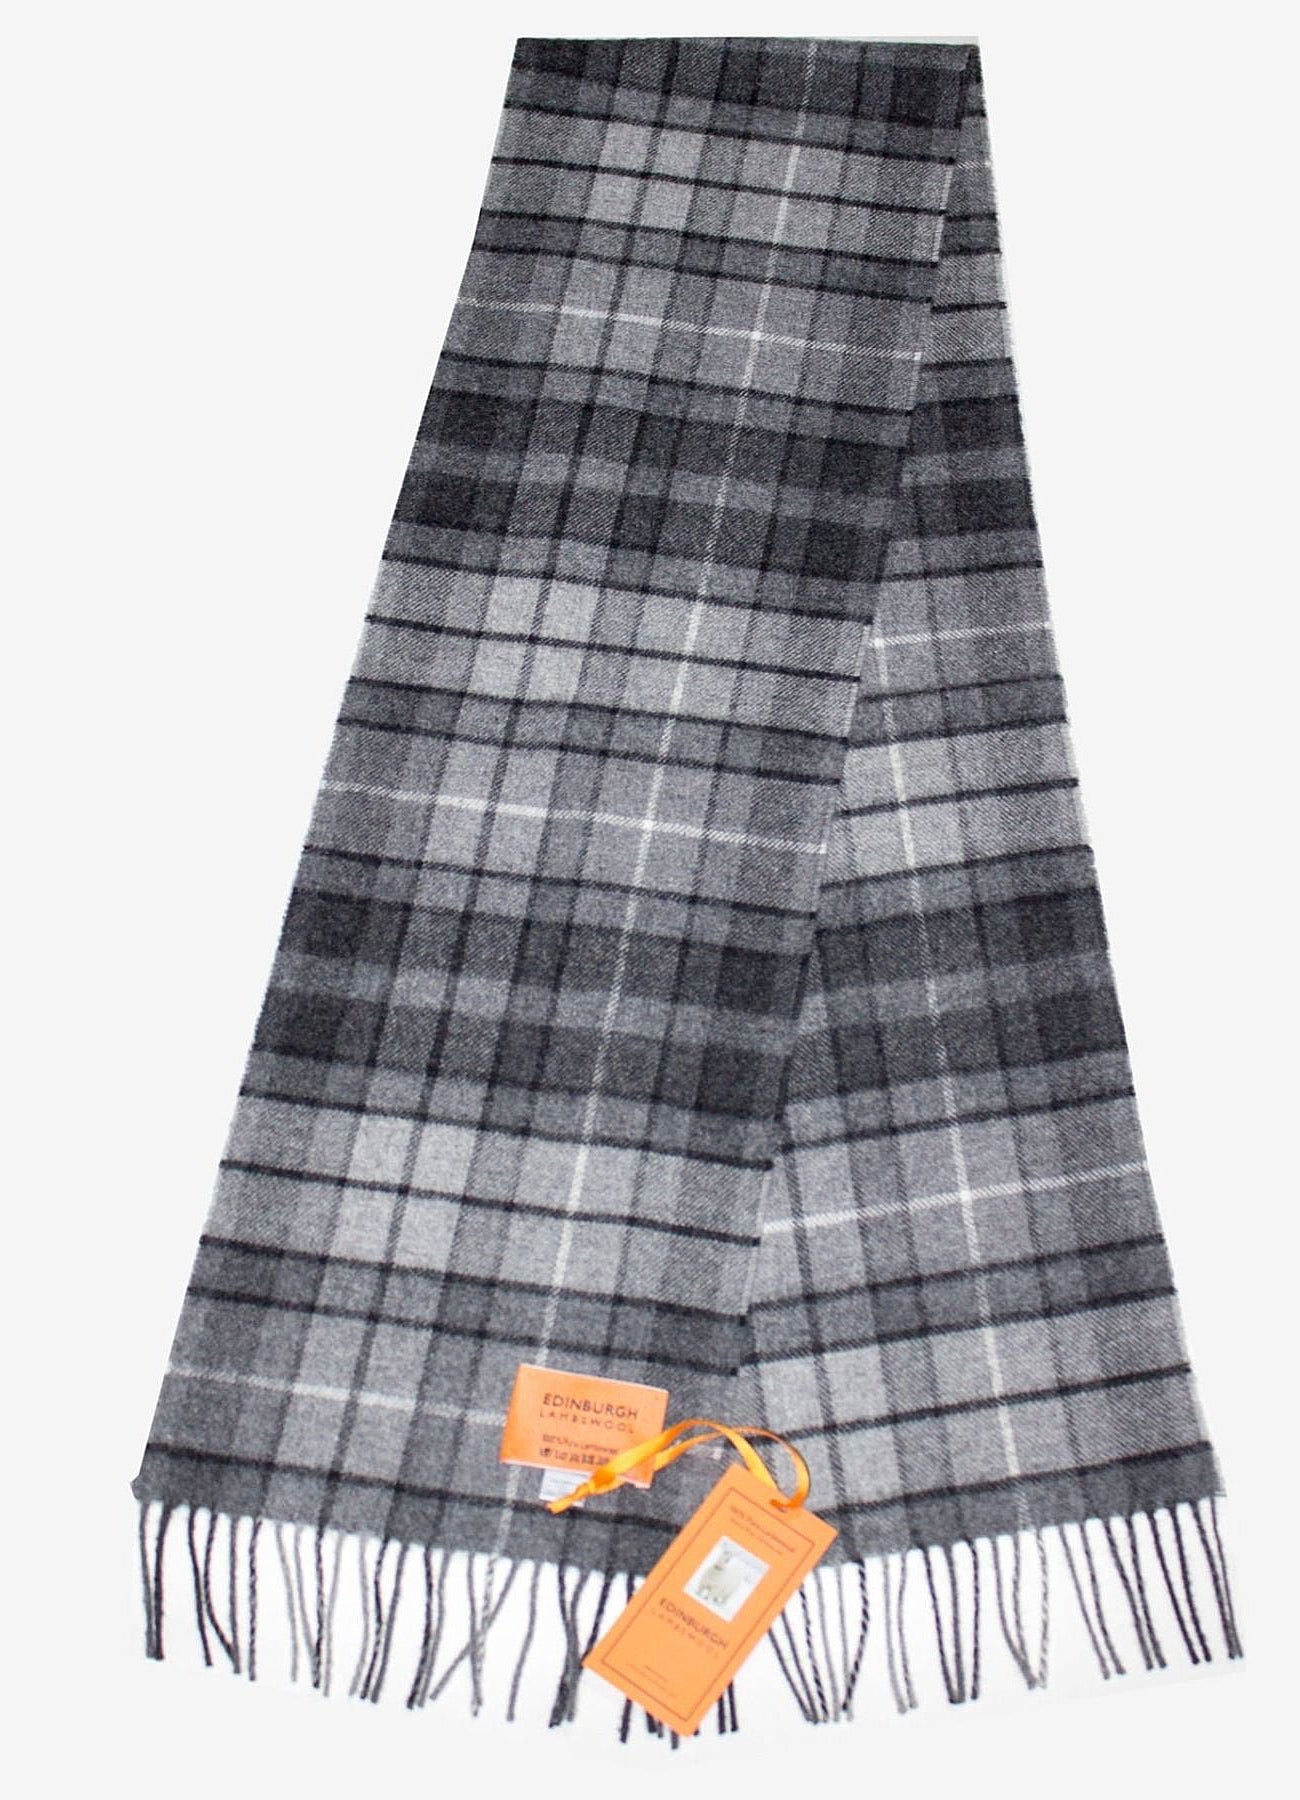 ブキャナン - スコットランド製スカーフ 100% ピュア カシミア